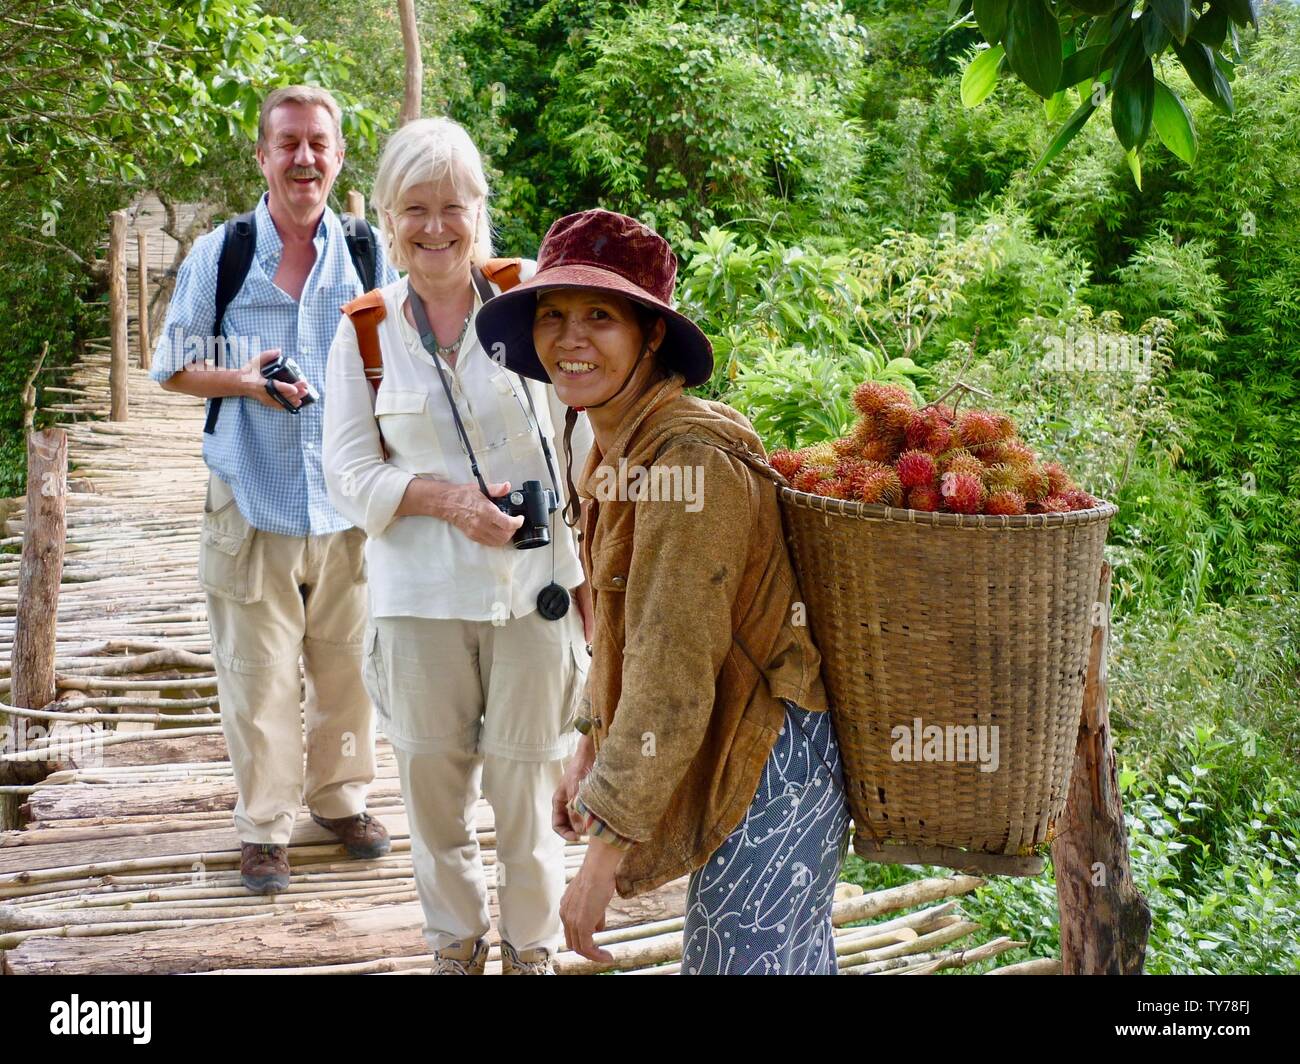 Una coppia europea sorridente posa per foto sul ponte in campagna con amichevole donna vietnamita che porta cesto di frutta di rambutan sulla schiena Foto Stock